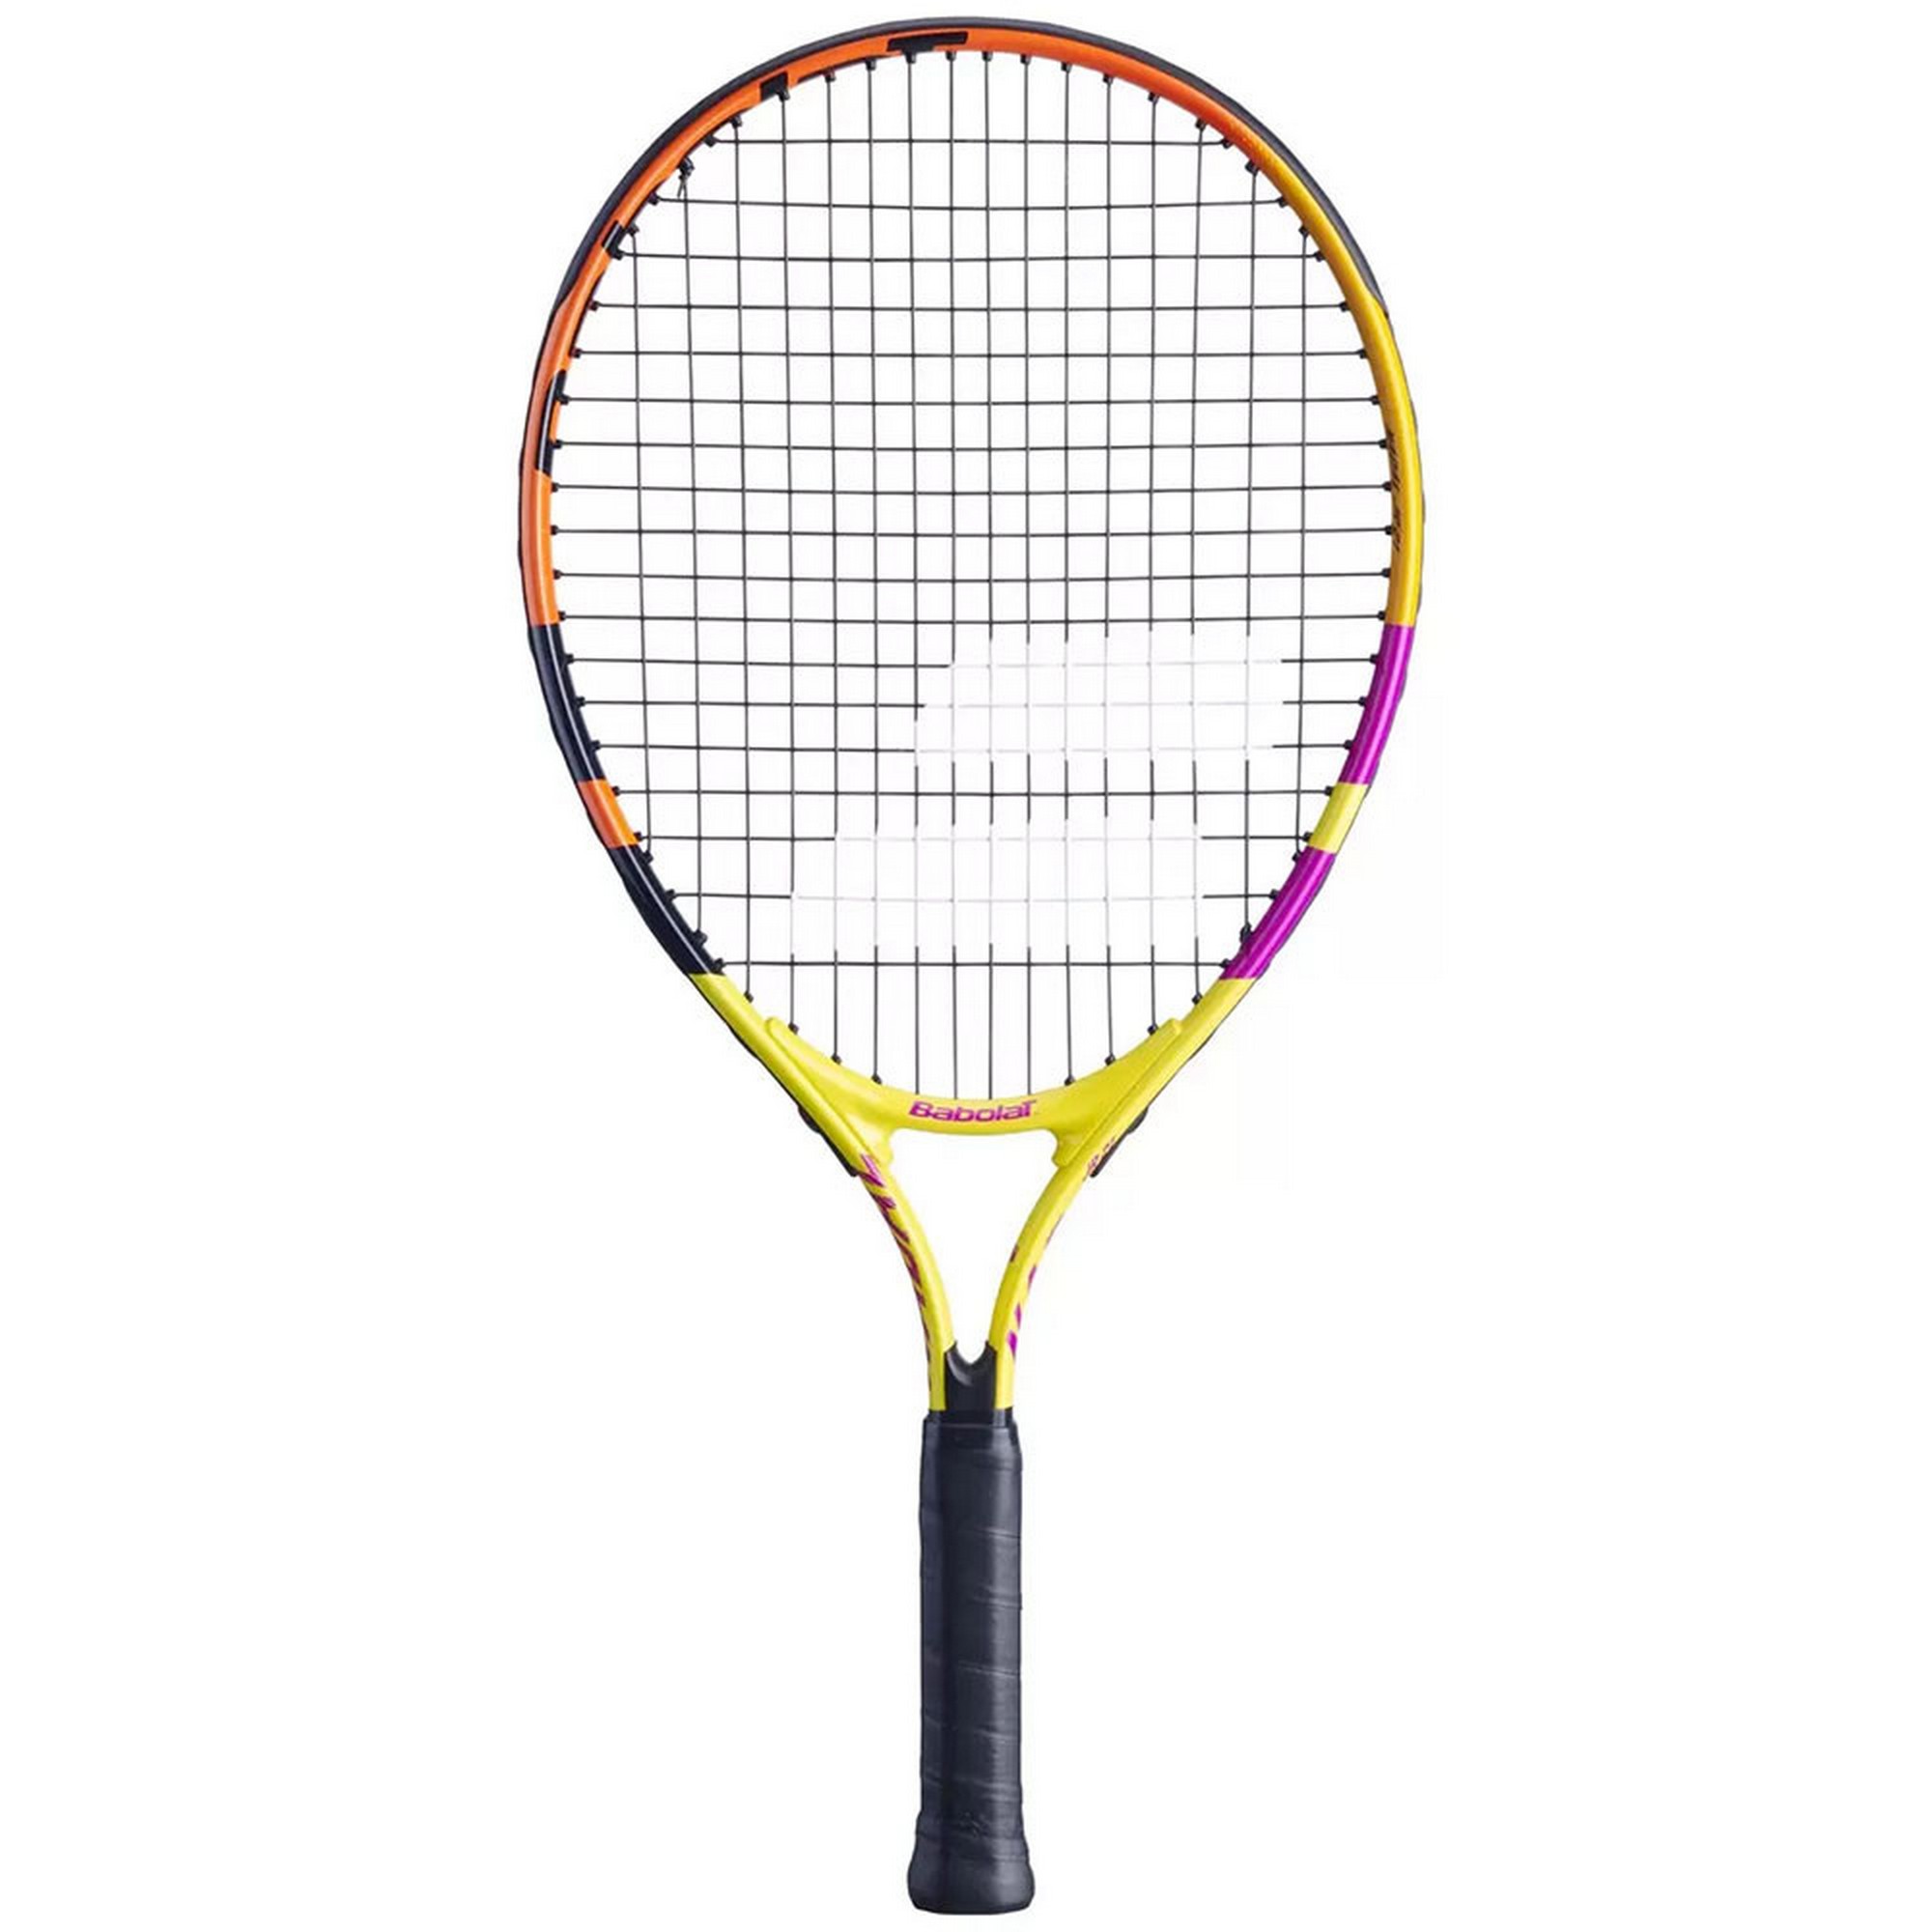 Ракетка для большого тенниса детская Babolat Nadal 21 Gr0000 140455-100 желтый-оранжевый